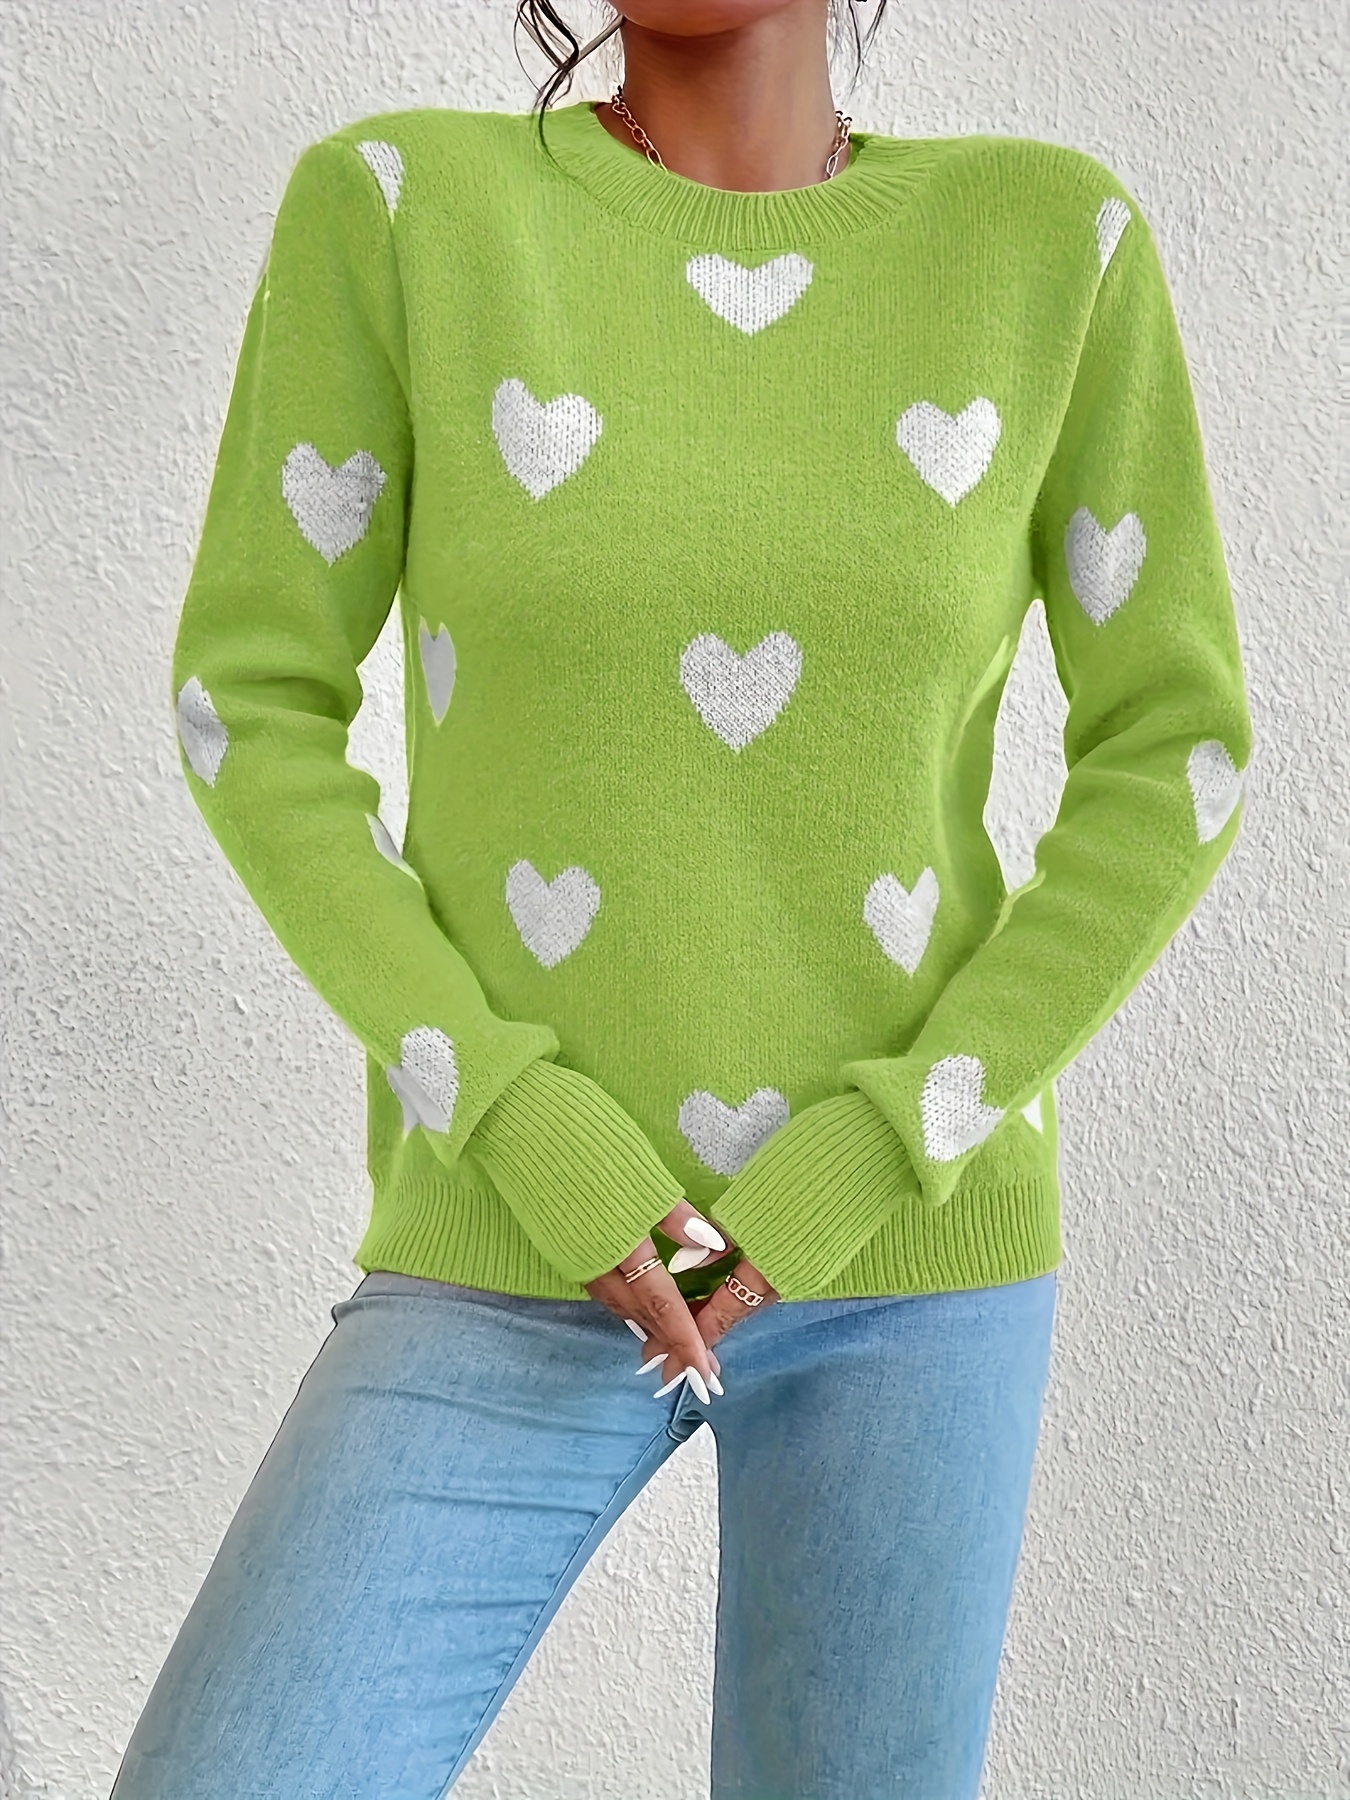 Women's Heart Crew Lightweight Sweater's